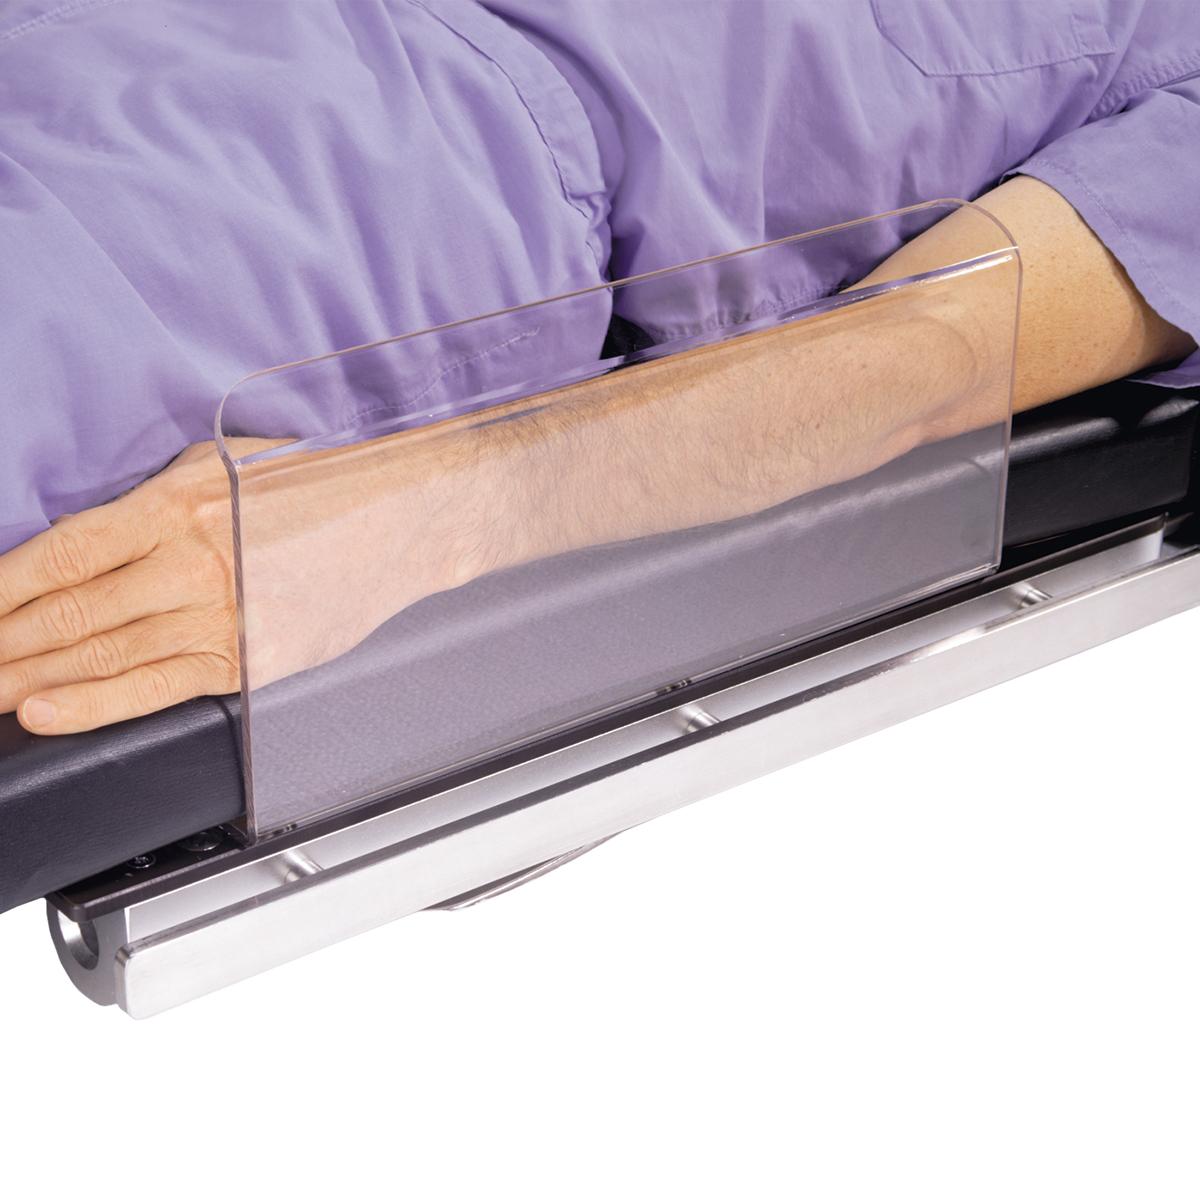 Dispositif de protection de bras, en cours d’utilisation par un patient